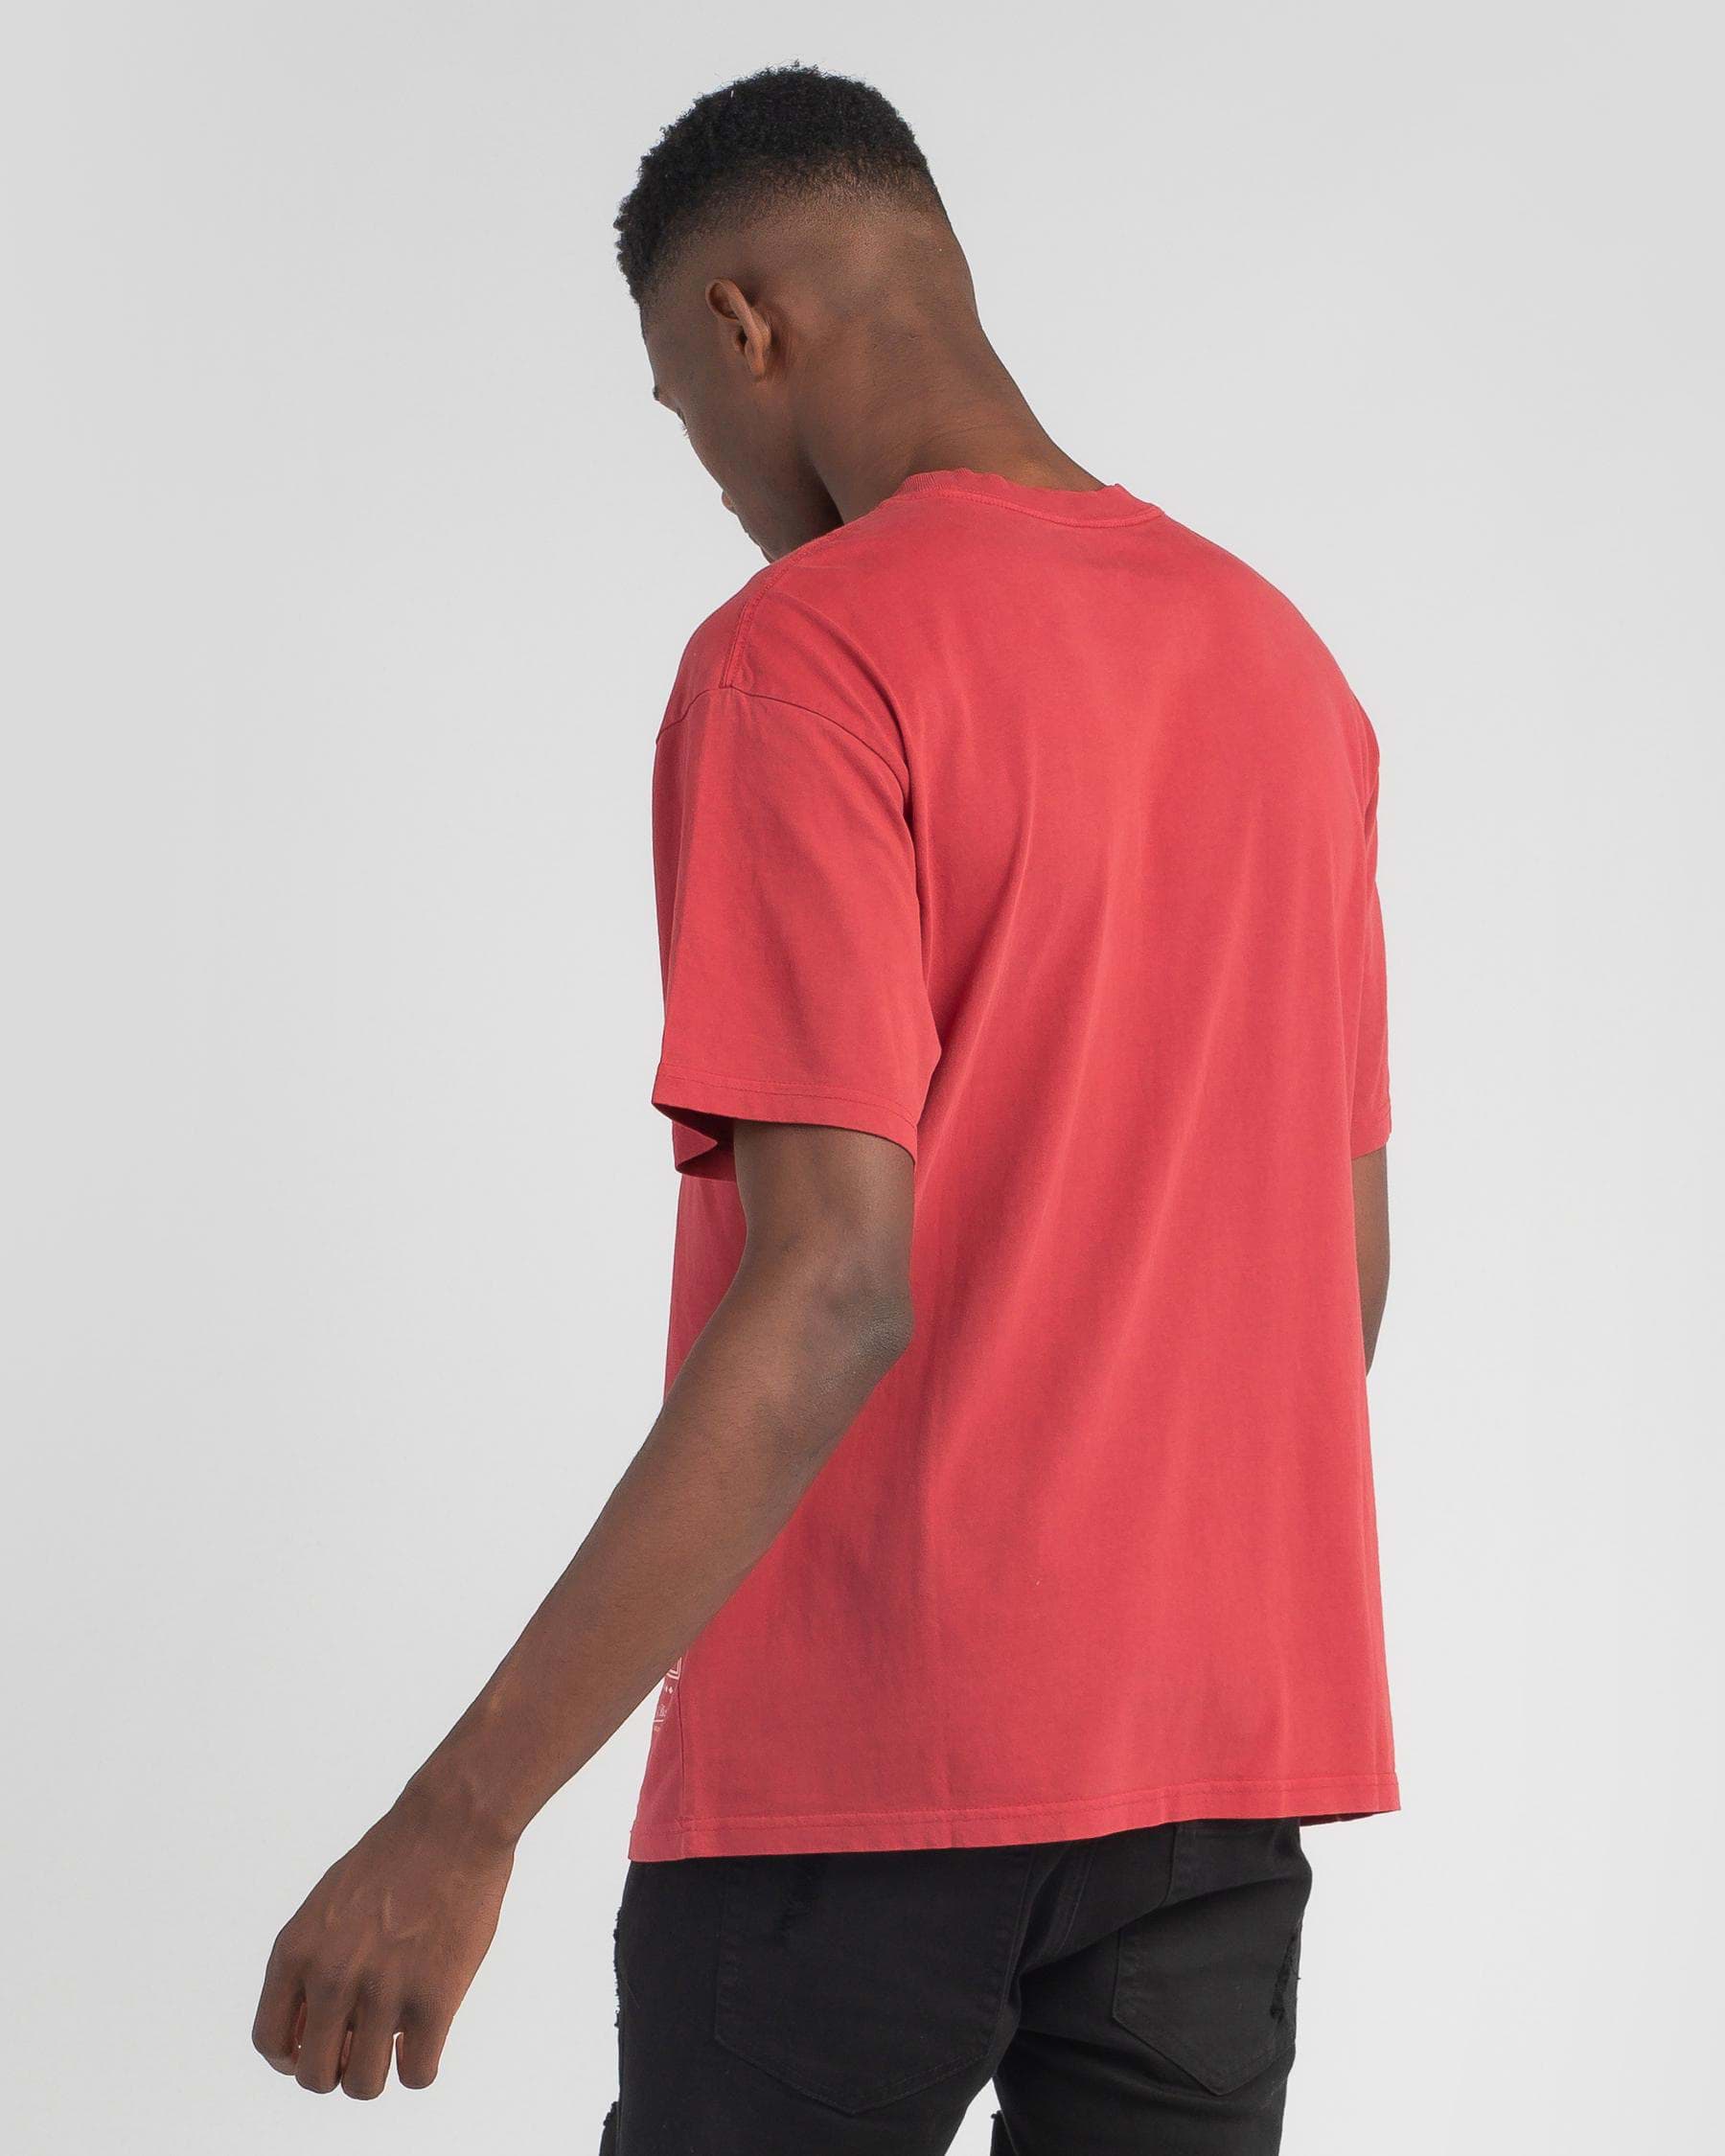 Mitchell & Ness Men's T-Shirt - Red - XL